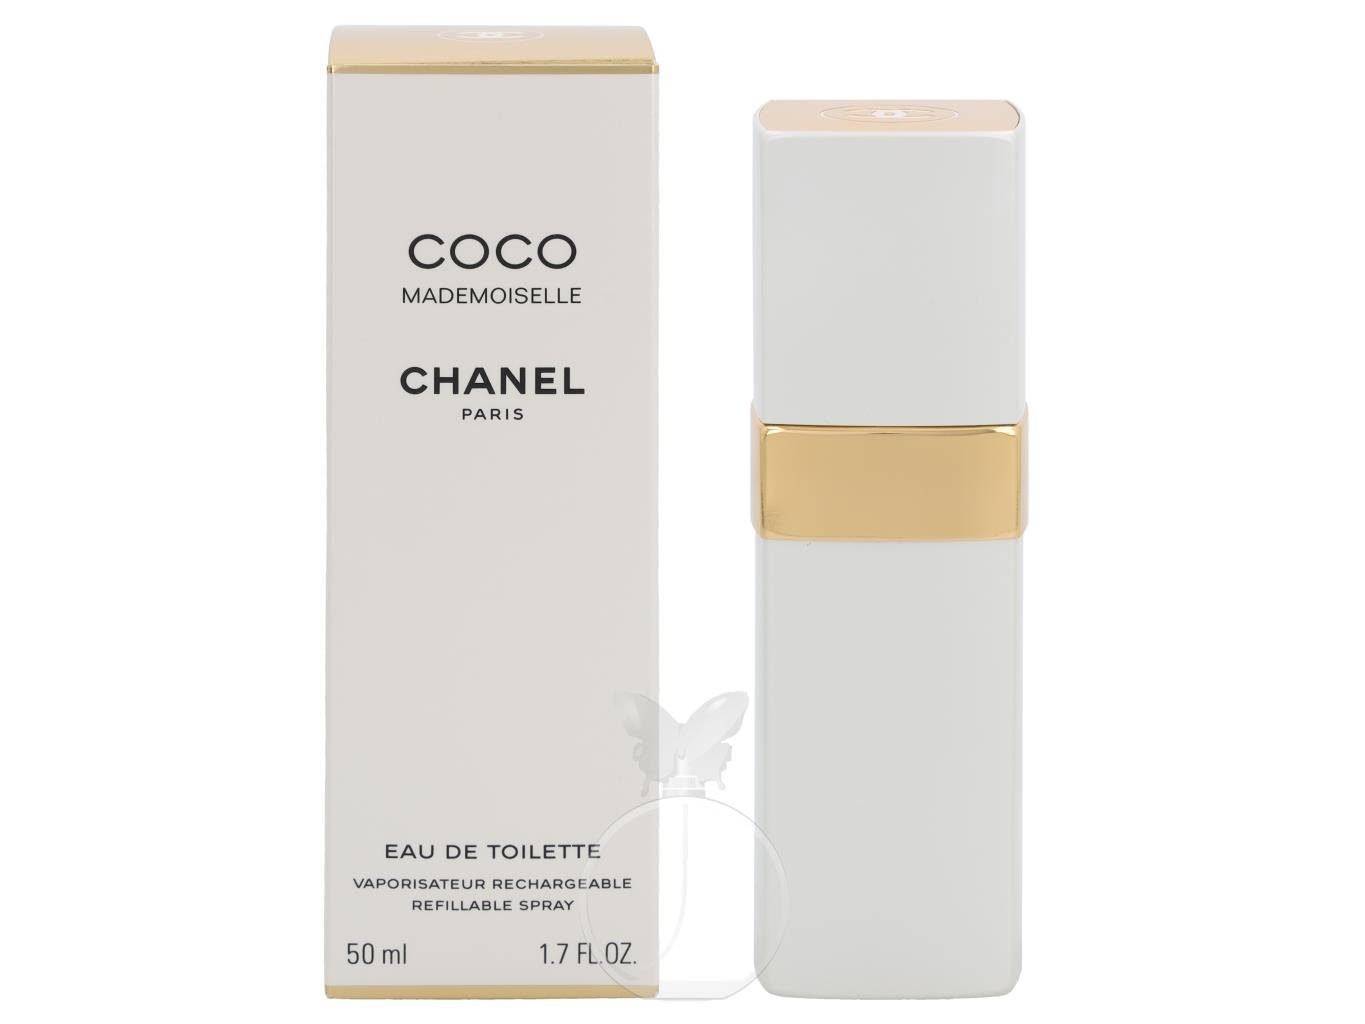 CHANEL Eau Toilette de ml Nachfüllbar Chanel Coco de Toilette 50 Eau Mademoiselle